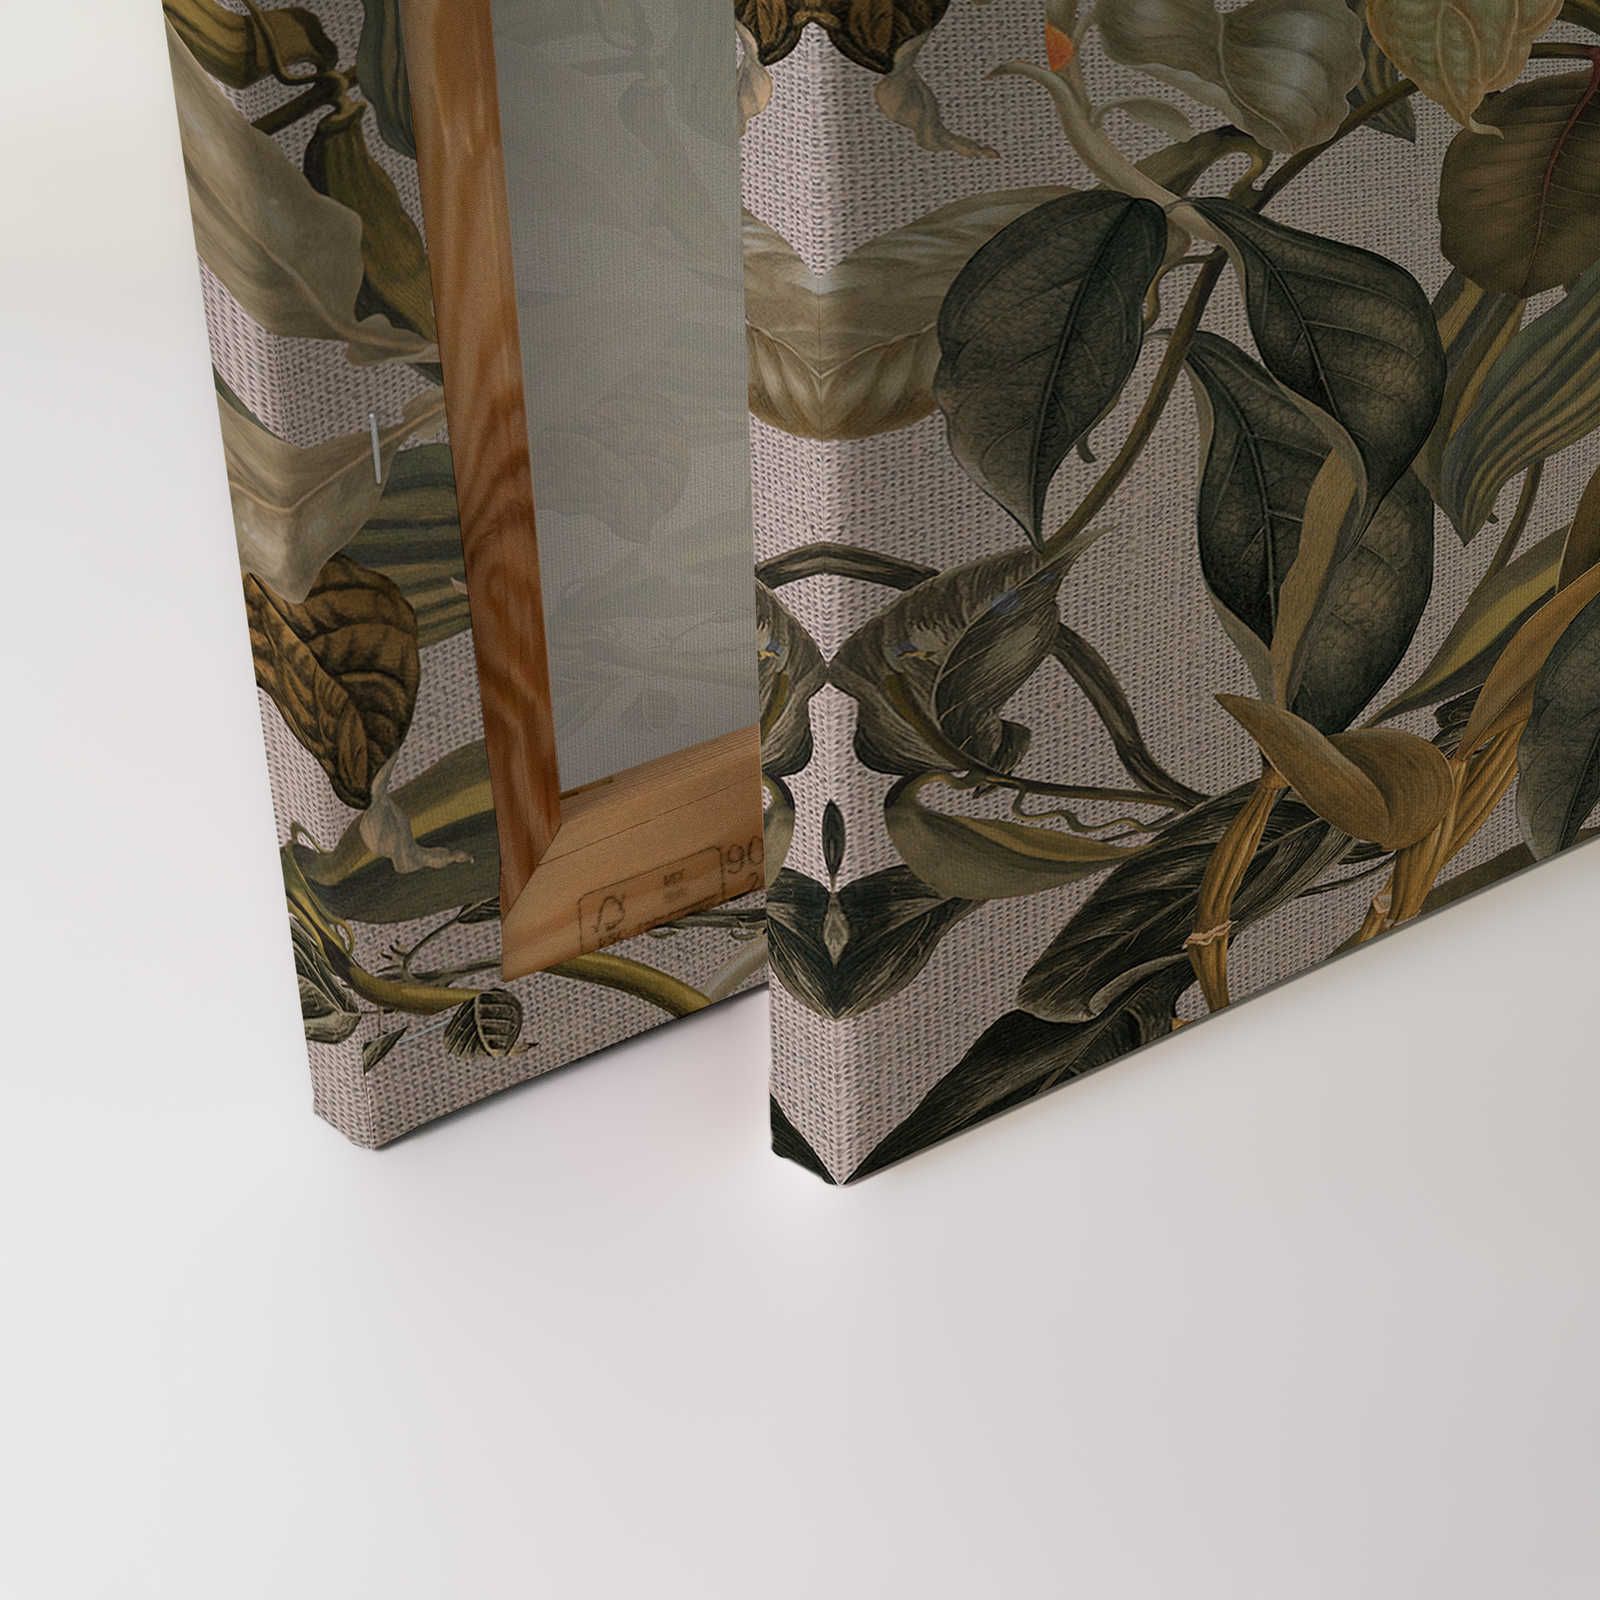             Canvas schilderij Botanische Stijl Bloemrijk, Bladeren & Textiel Look - 0,90 m x 0,60 m
        